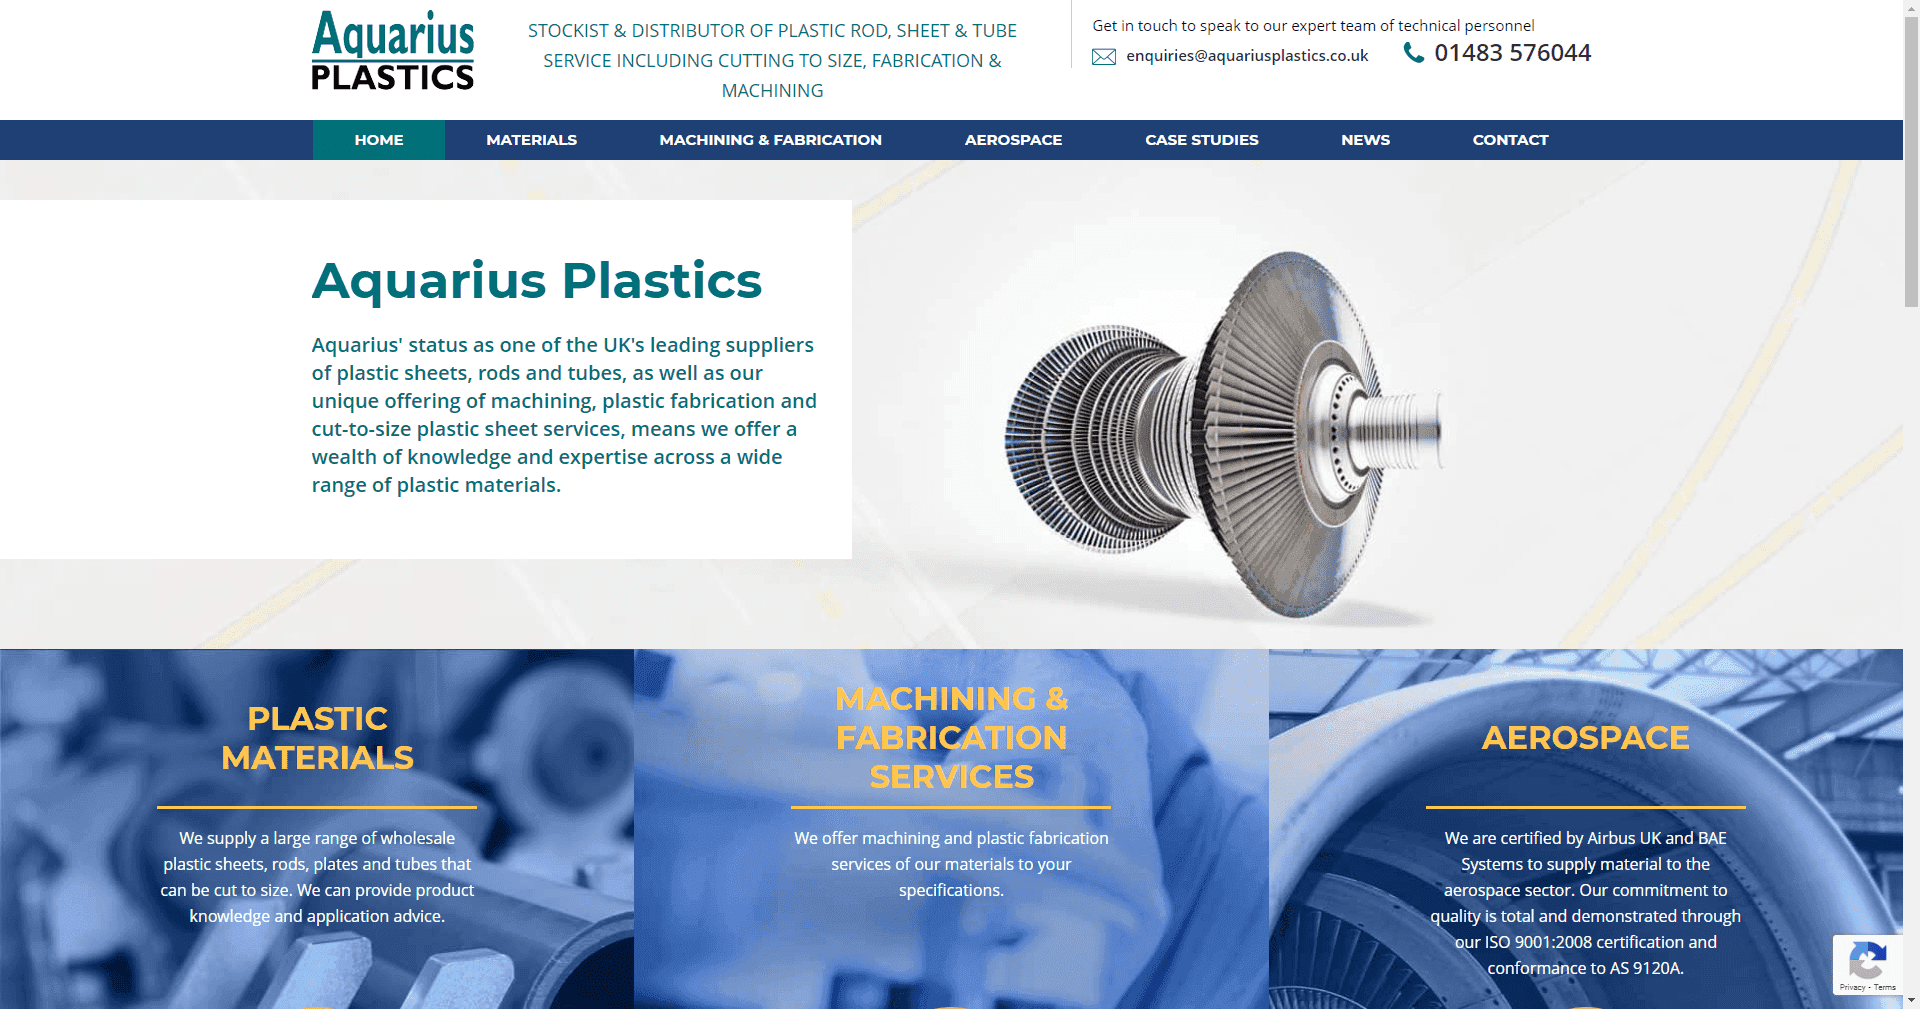 Product Plastic Machining & Fabrication Services | Aquarius Plastics image